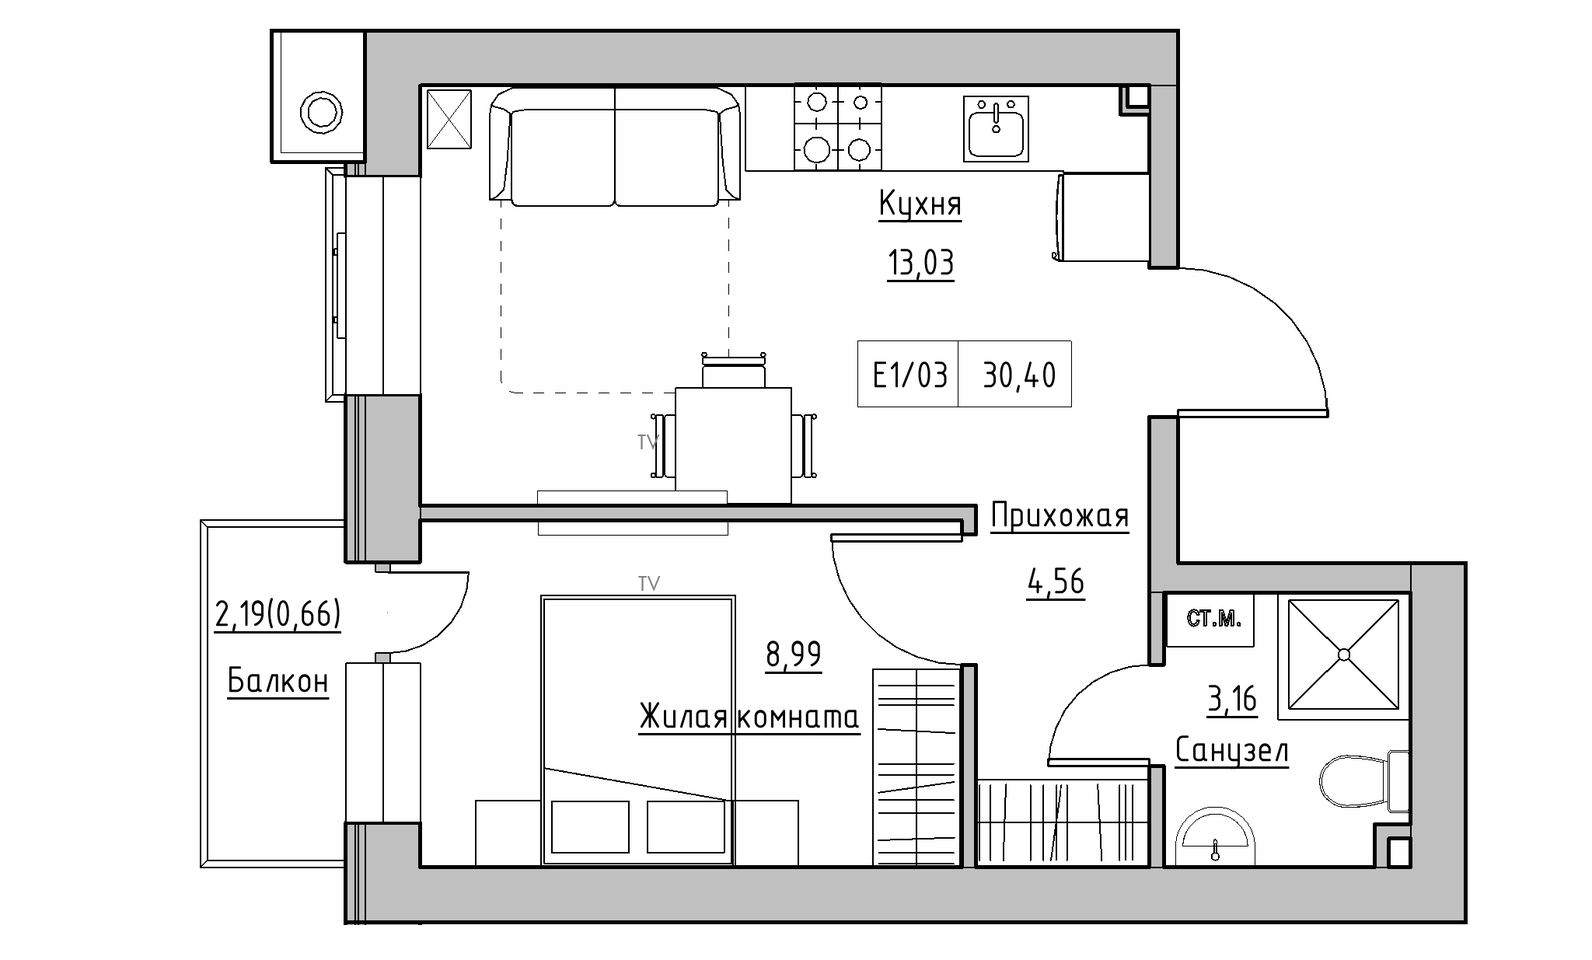 Планування 1-к квартира площею 30.4м2, KS-014-05/0015.